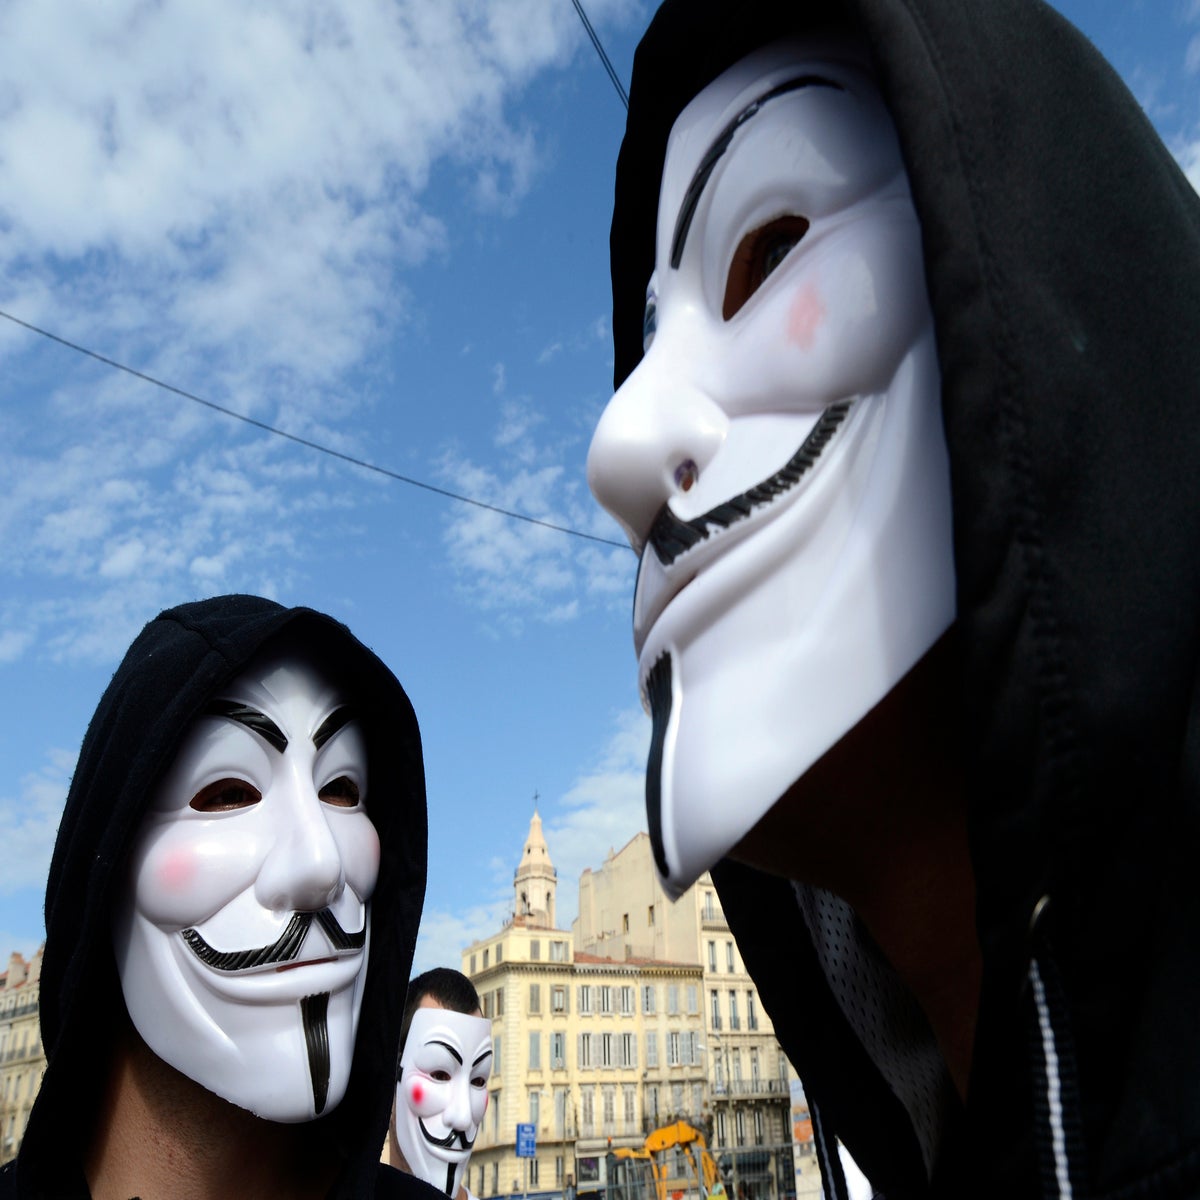 V for Vendetta mask